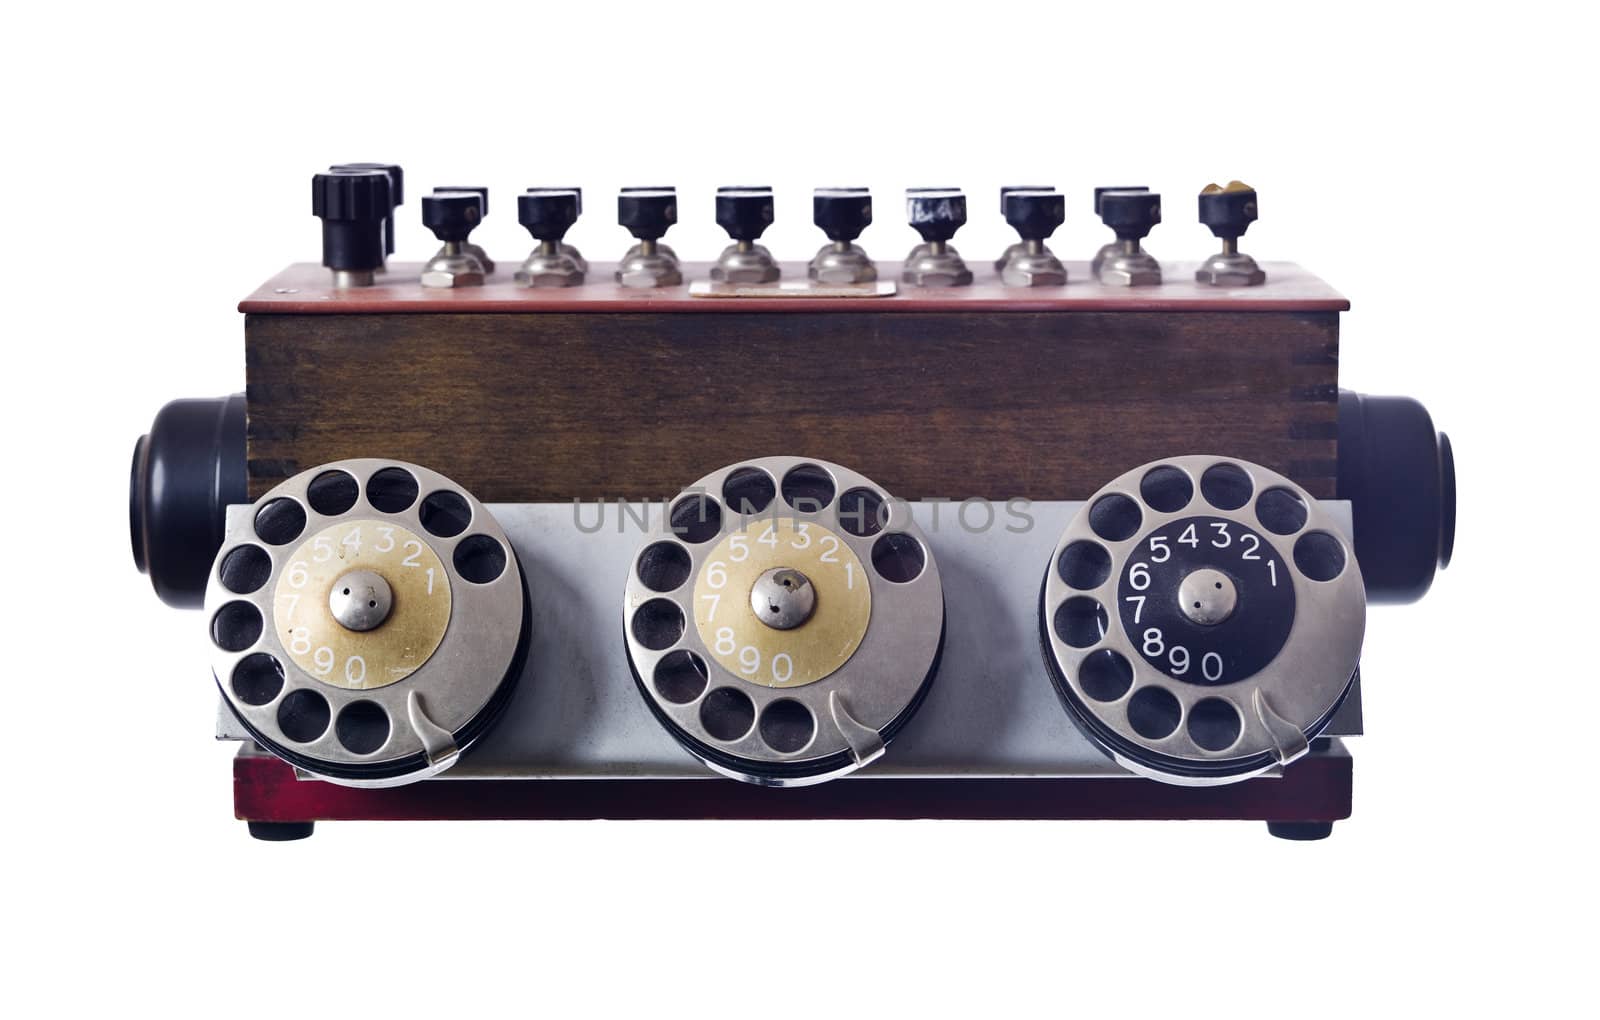 Vintage telephone isolated on white background